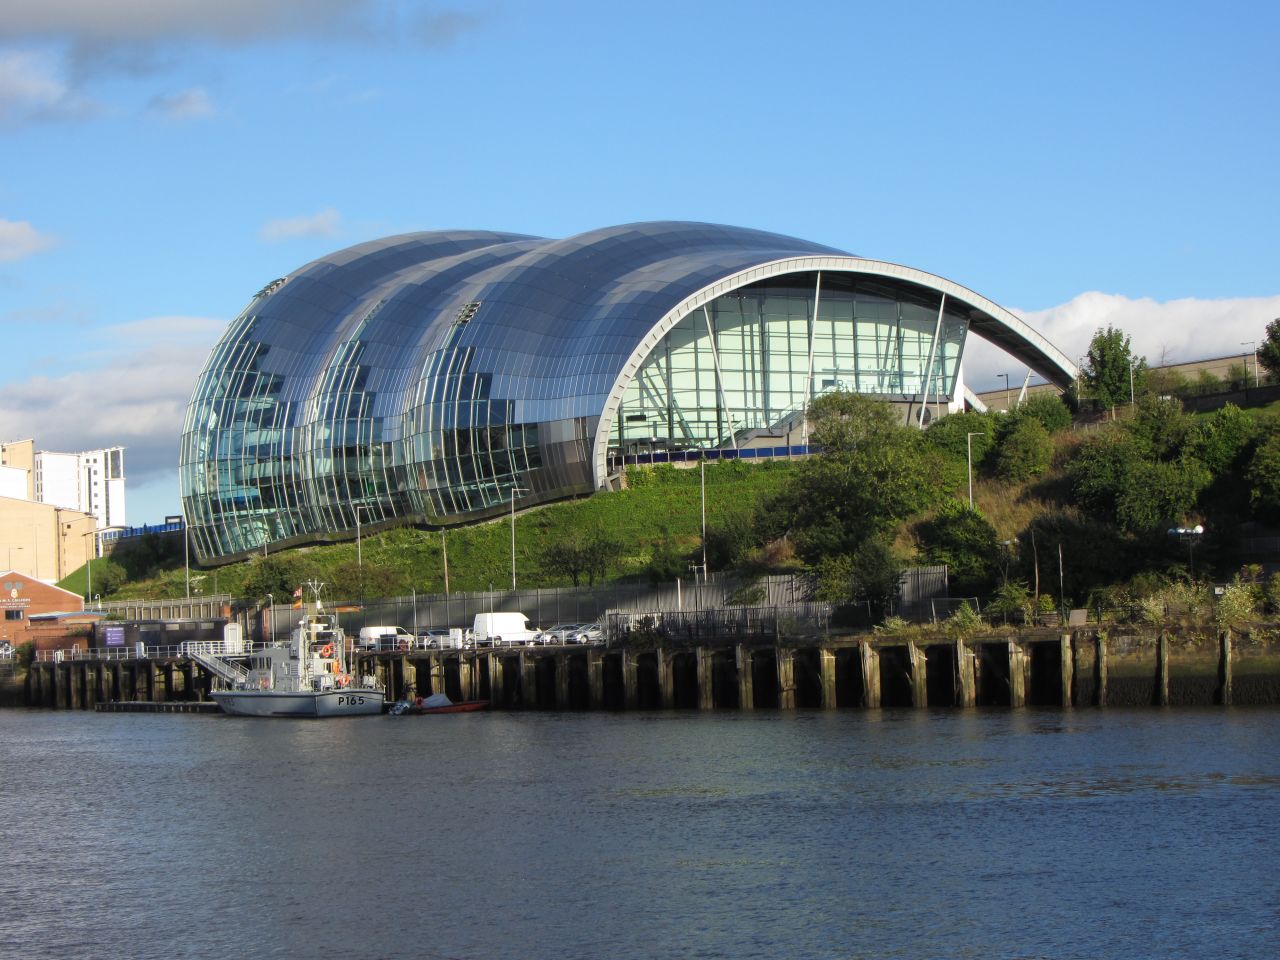 Bajo el manto de cristal curvado, Sage Gateshead alberga tres salas de conciertos de diferentes tamaños, todas equipadas con tecnología de punta. Desde su finalización en el 2004, el complejo de eventos de forma orgánica ha sido una atracción de la zona de Newcastle al norte de Inglaterra. Arquitecto: Foster + Partners. 